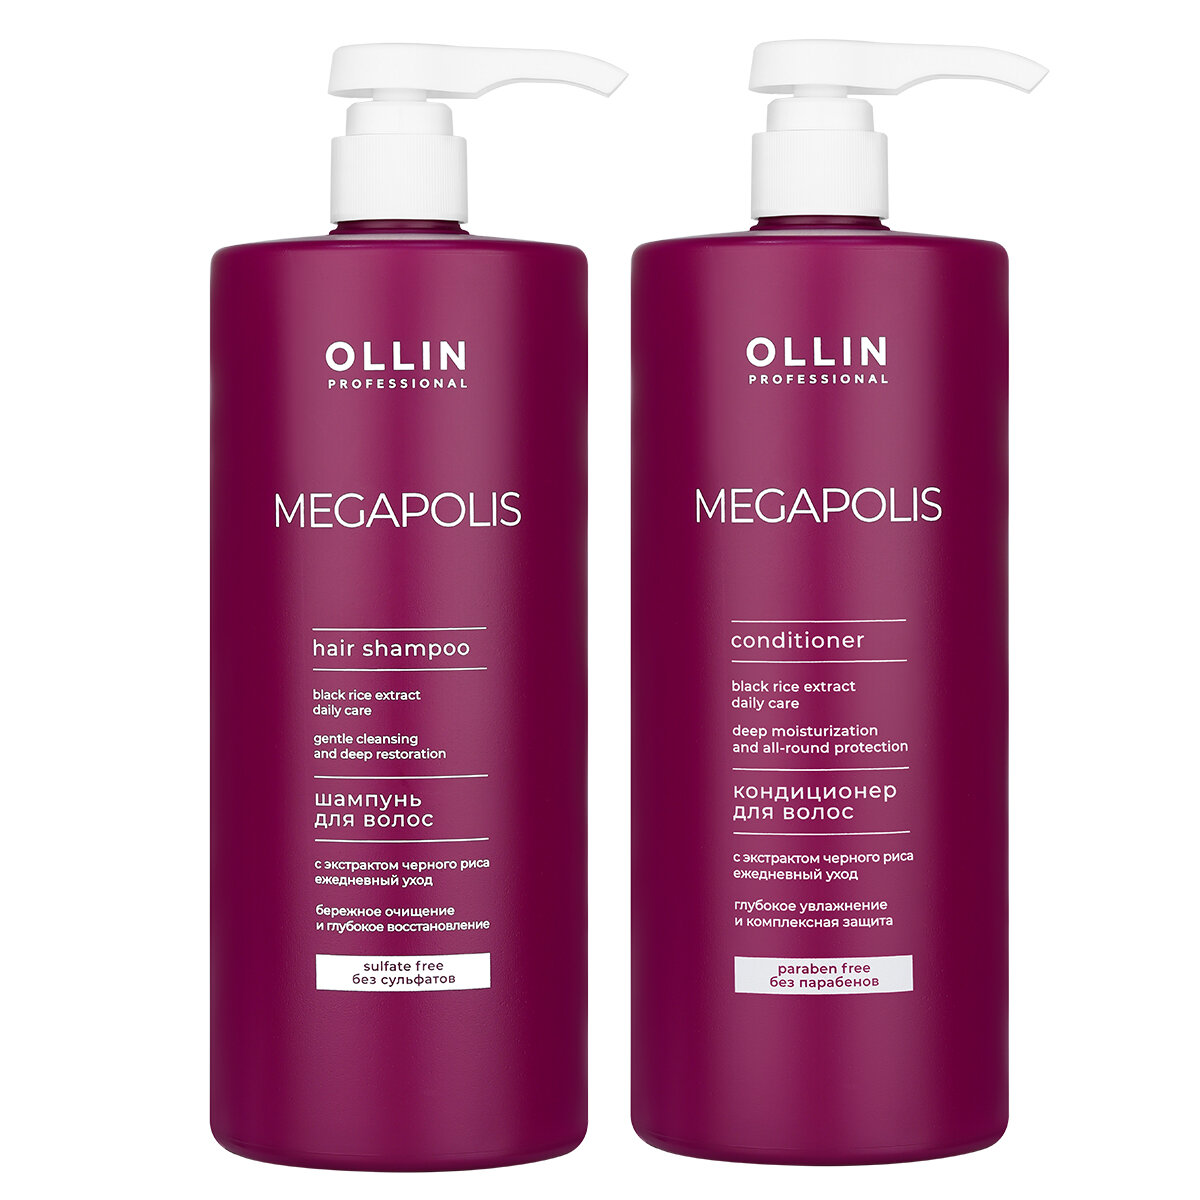 Набор MEGAPOLIS для восстановления волос OLLIN PROFESSIONAL черный рис 1000+1000 мл